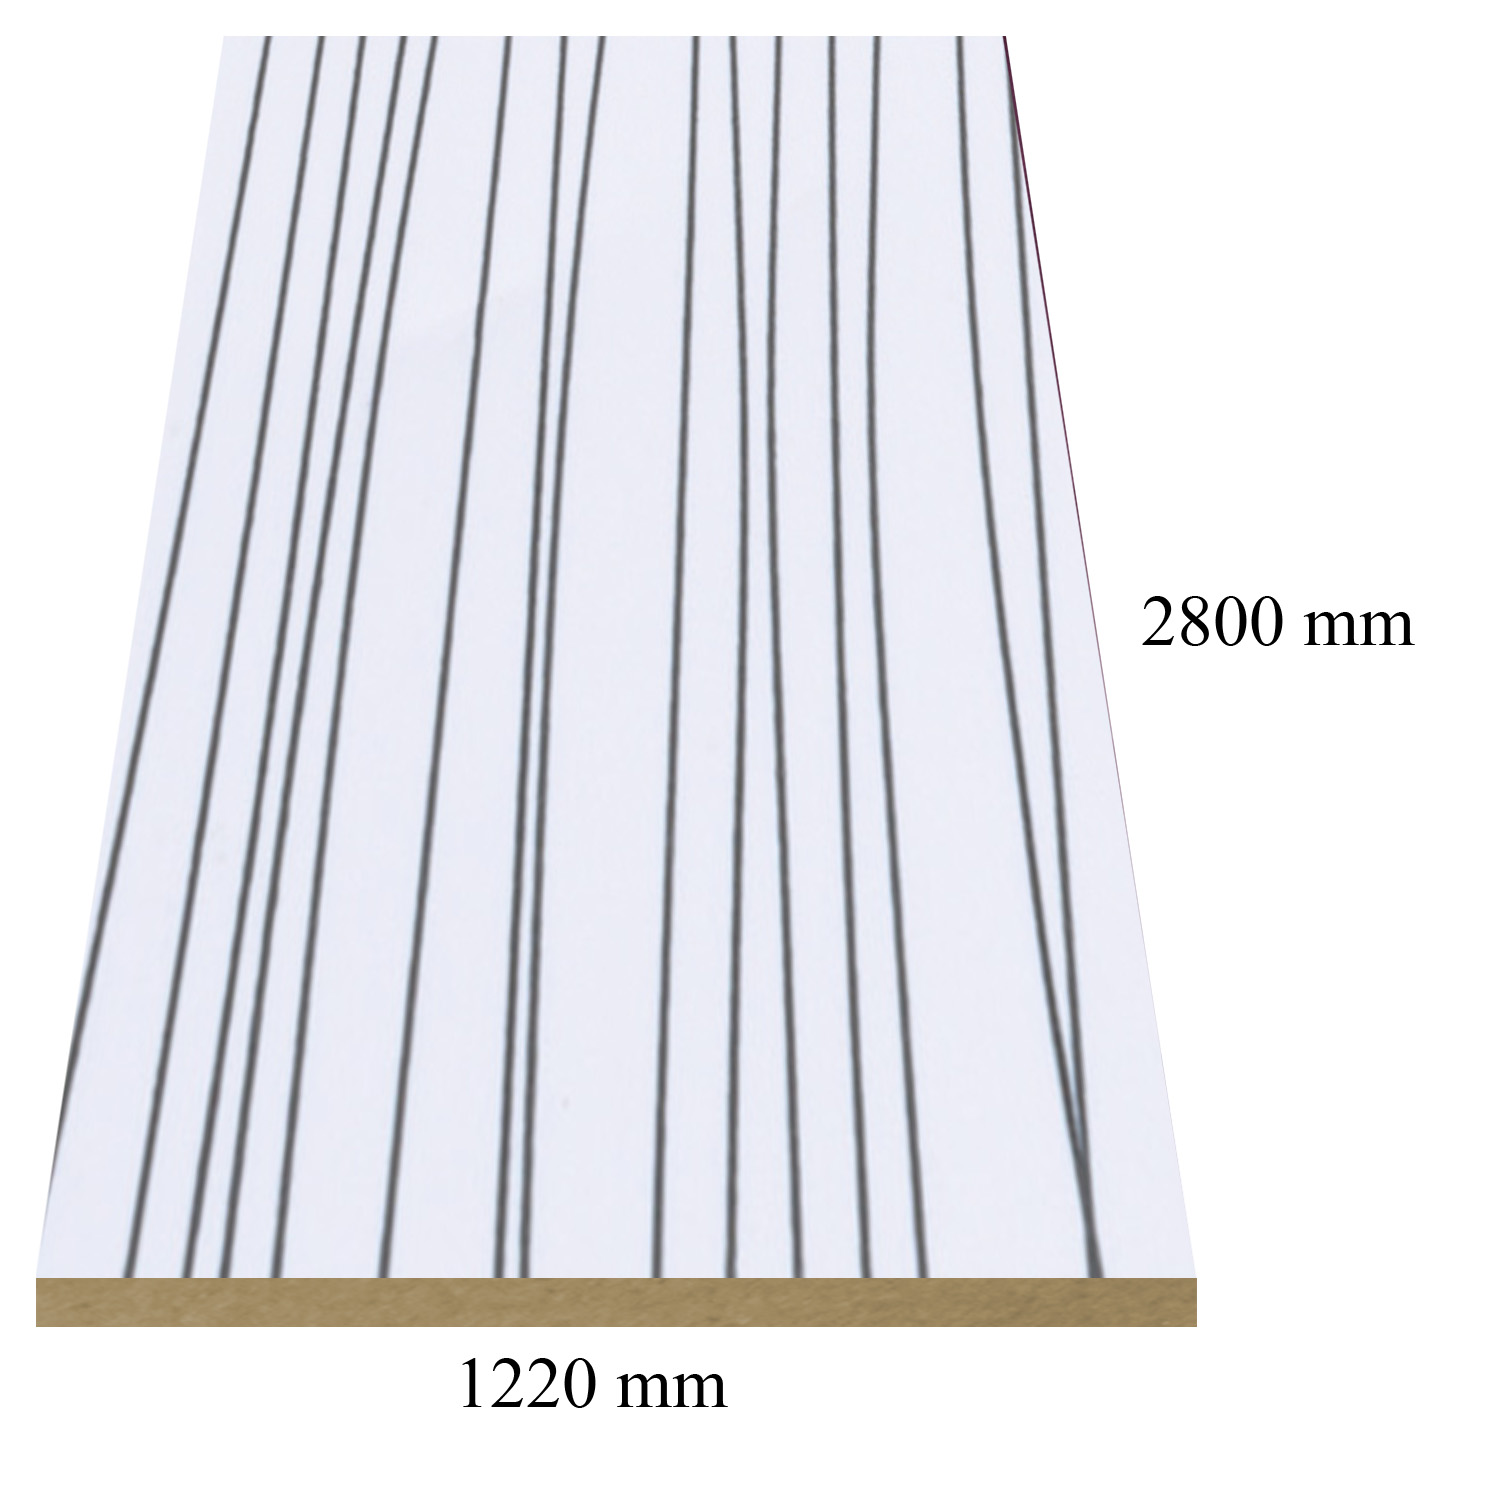 2 — 6151/143  Stripe White high gloss - PVC coated 18 mm MDF